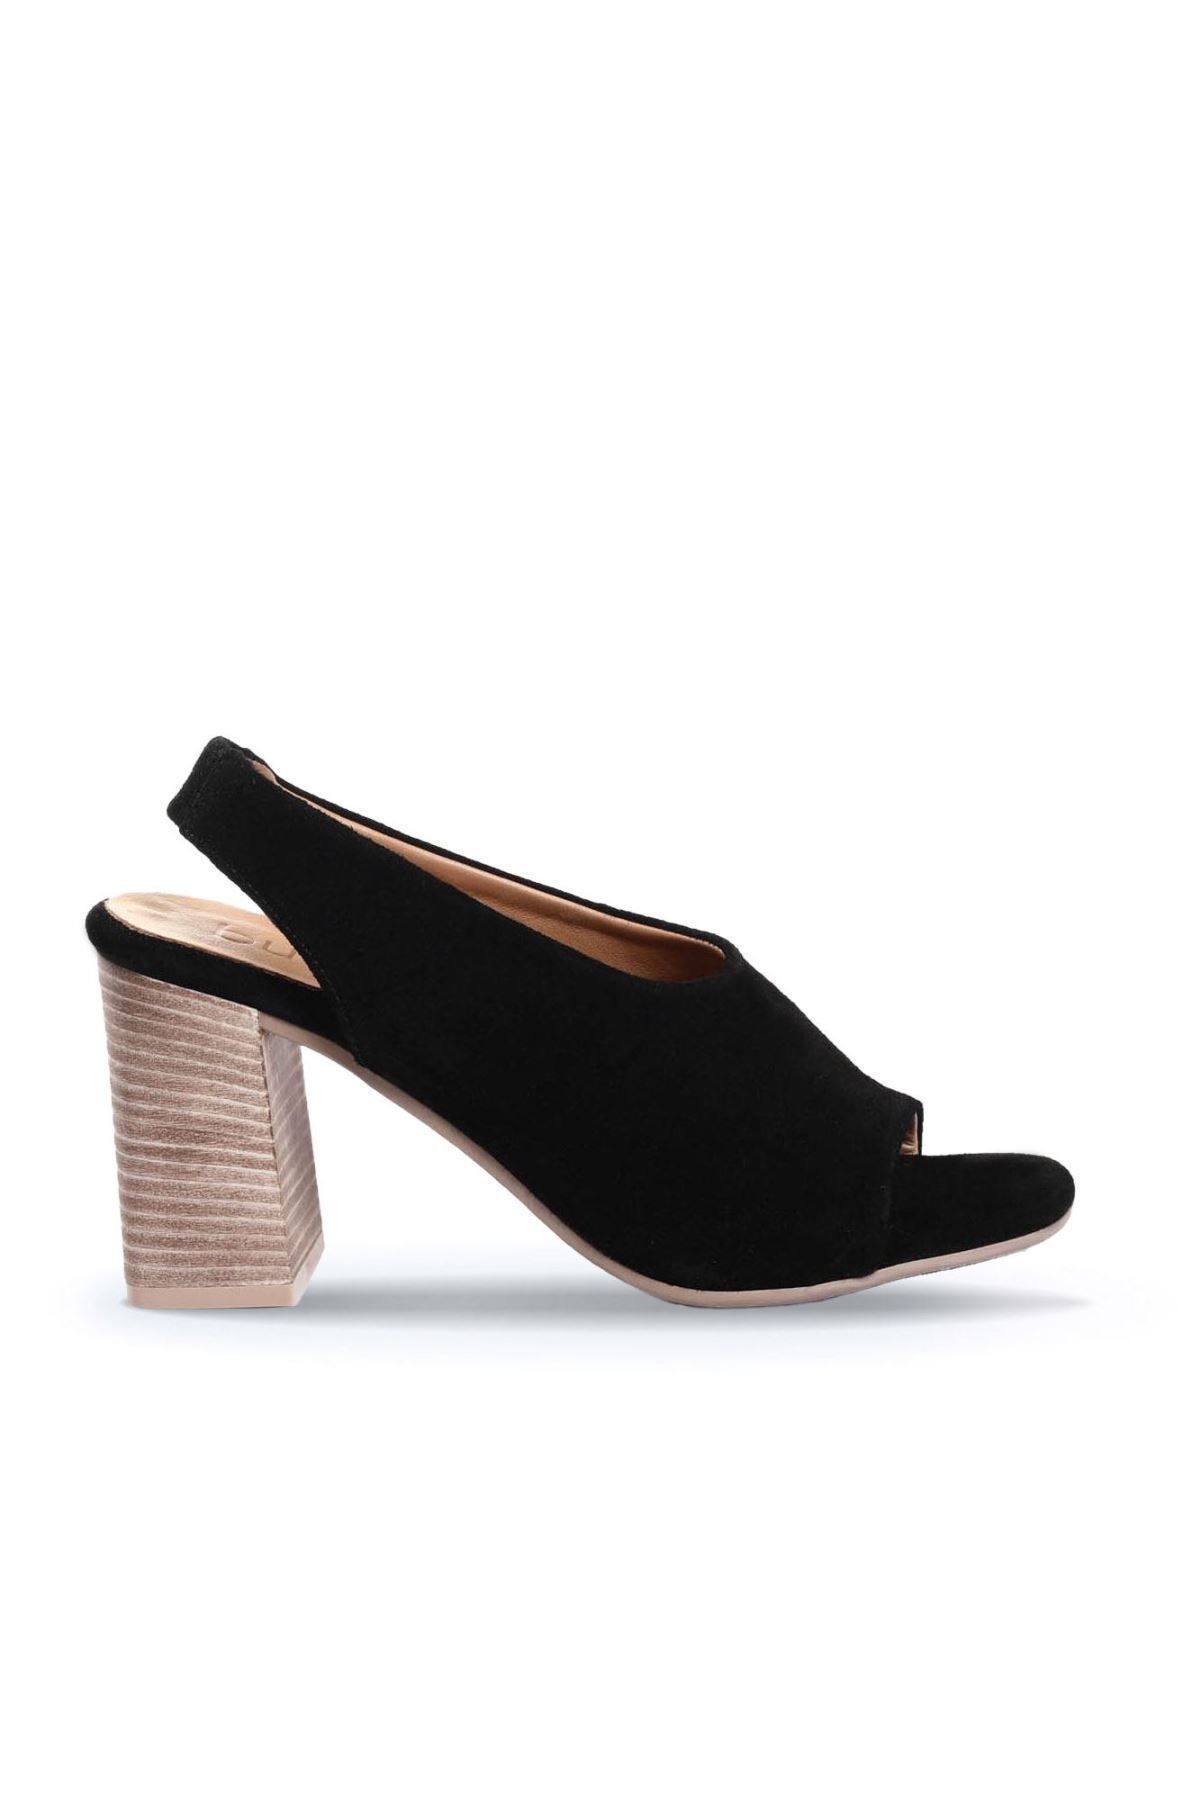 BUENO Shoes Siyah Süet Kadın Topuklu Ayakkabı